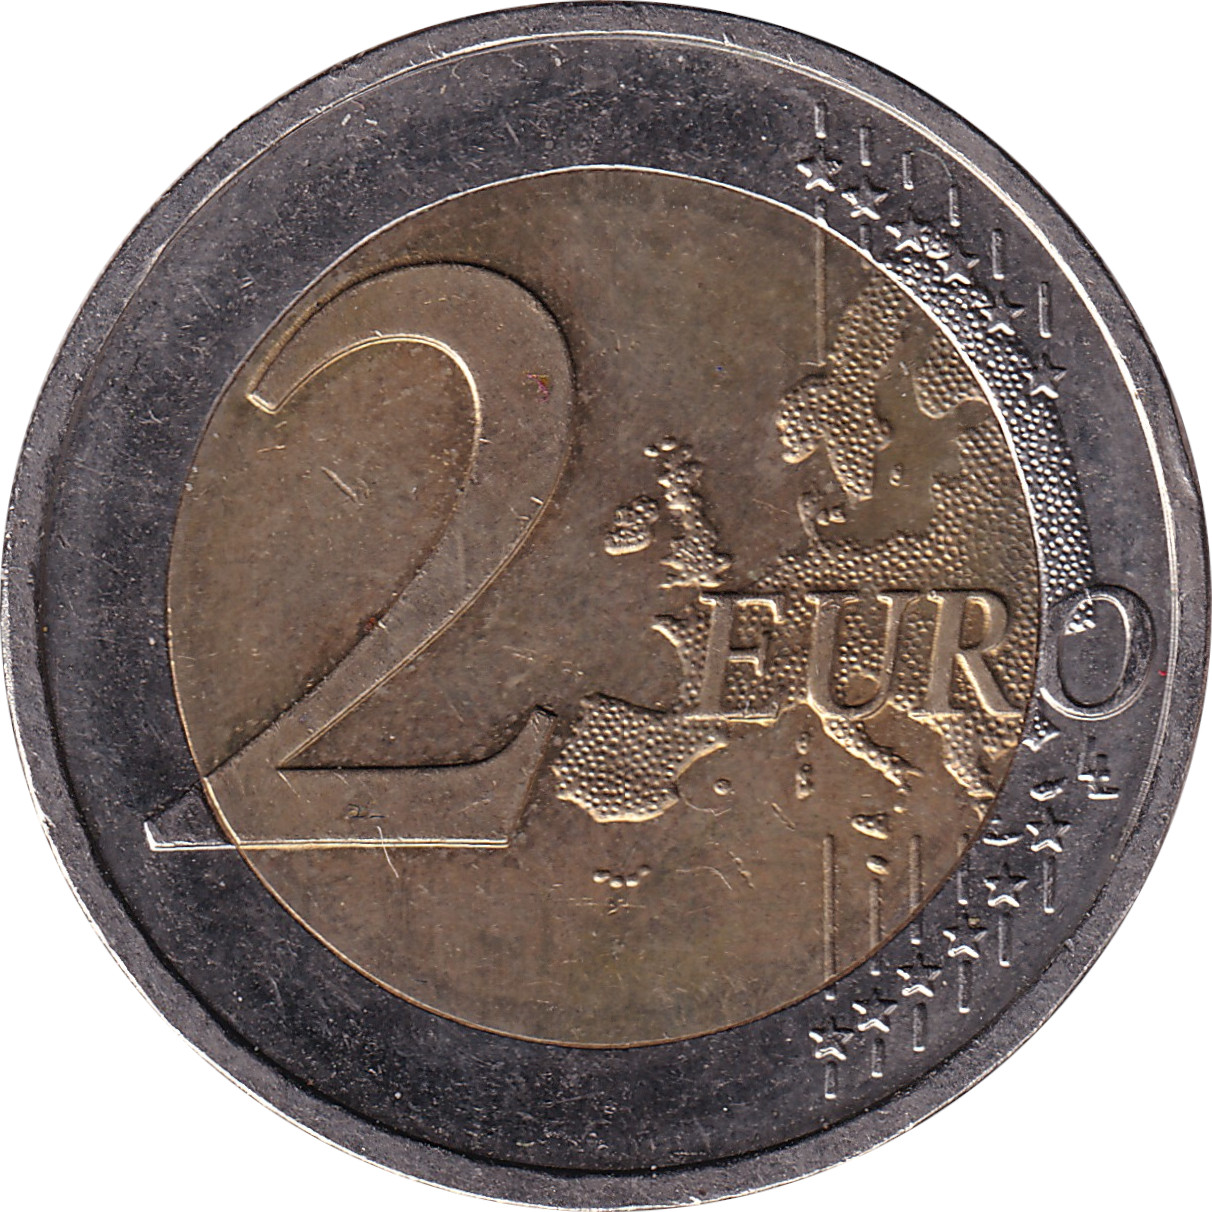 2 euro - Saxe-Anhalt